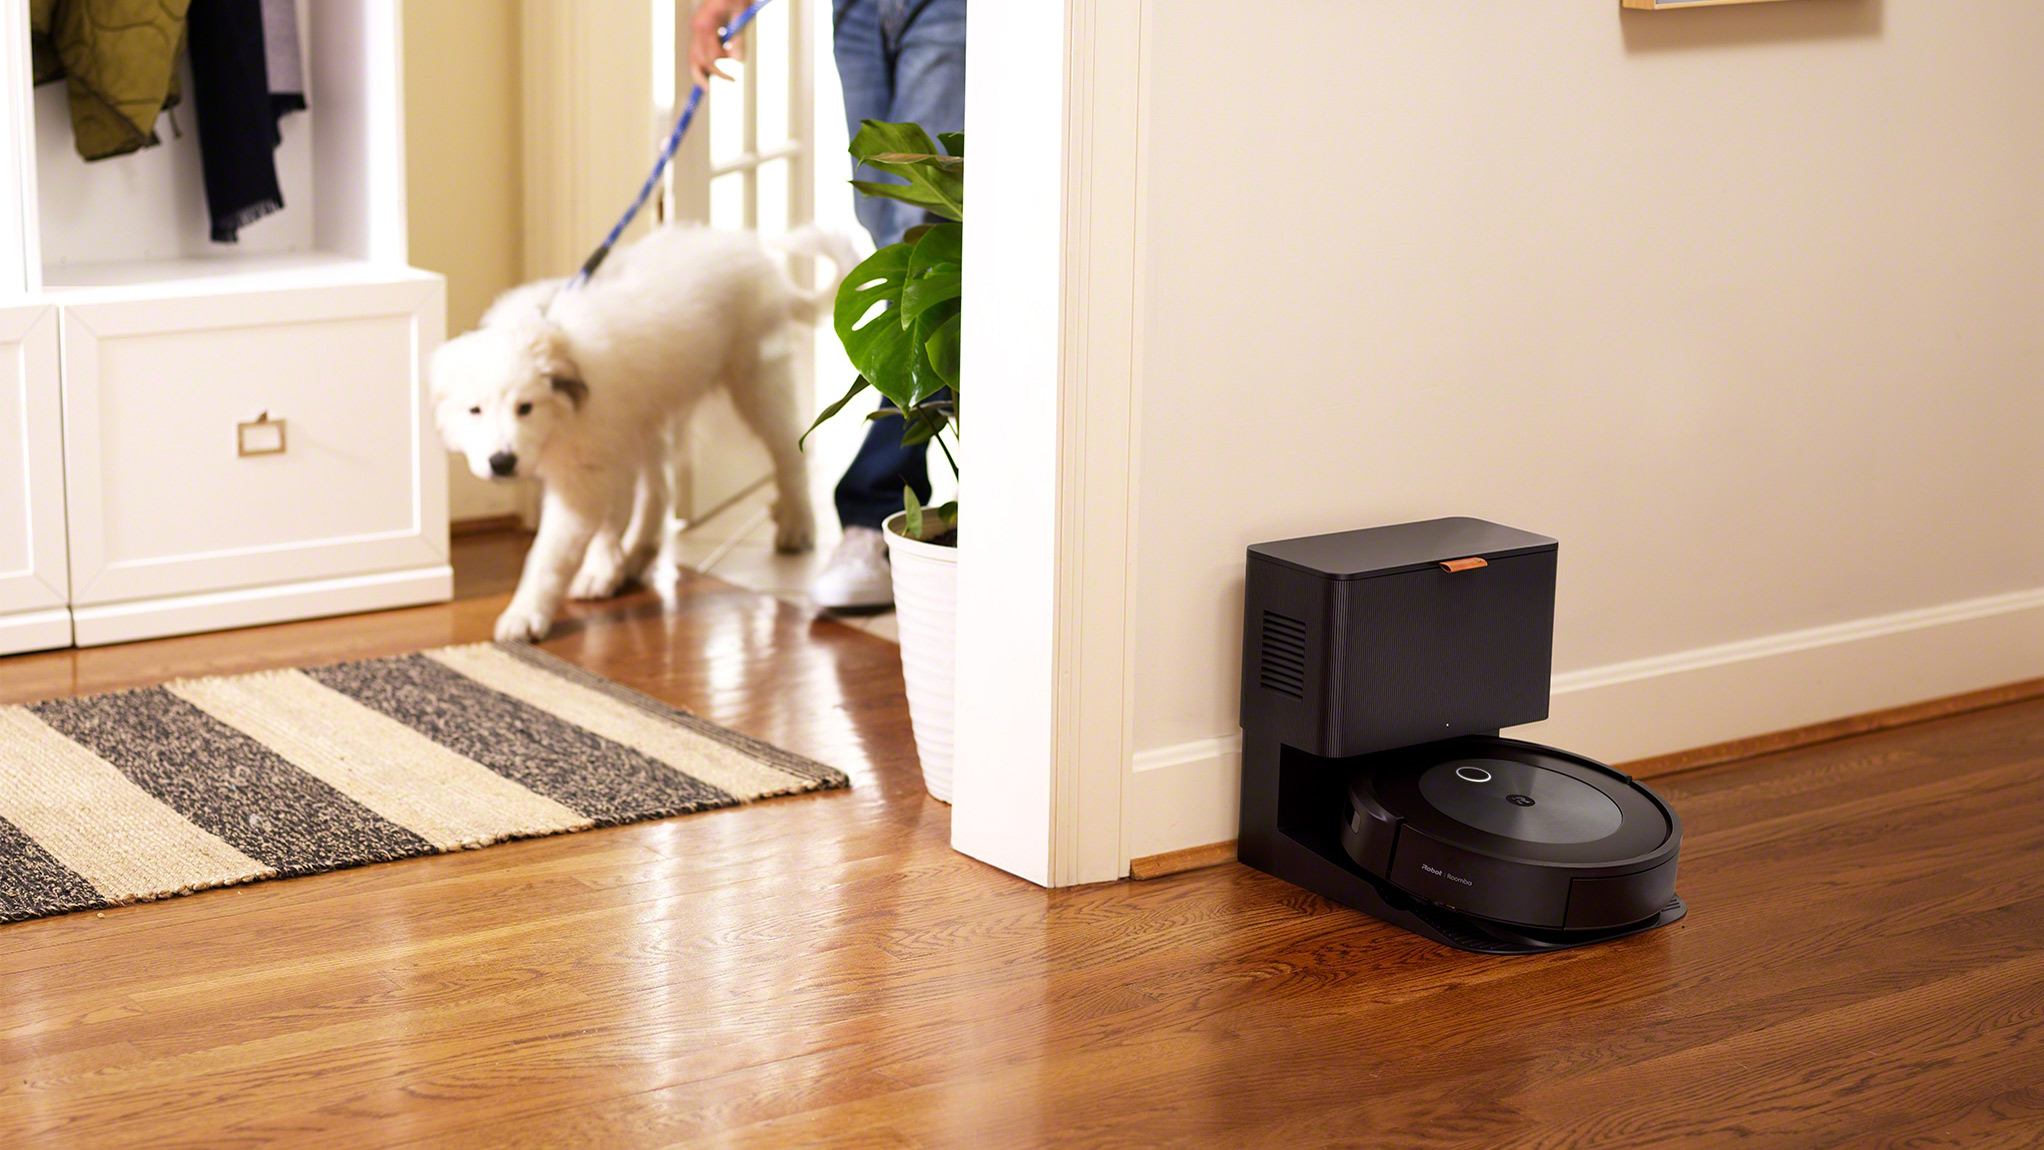 iRobot Roomba s9+ vs. iRobot Roomba i7+: Which should you buy?